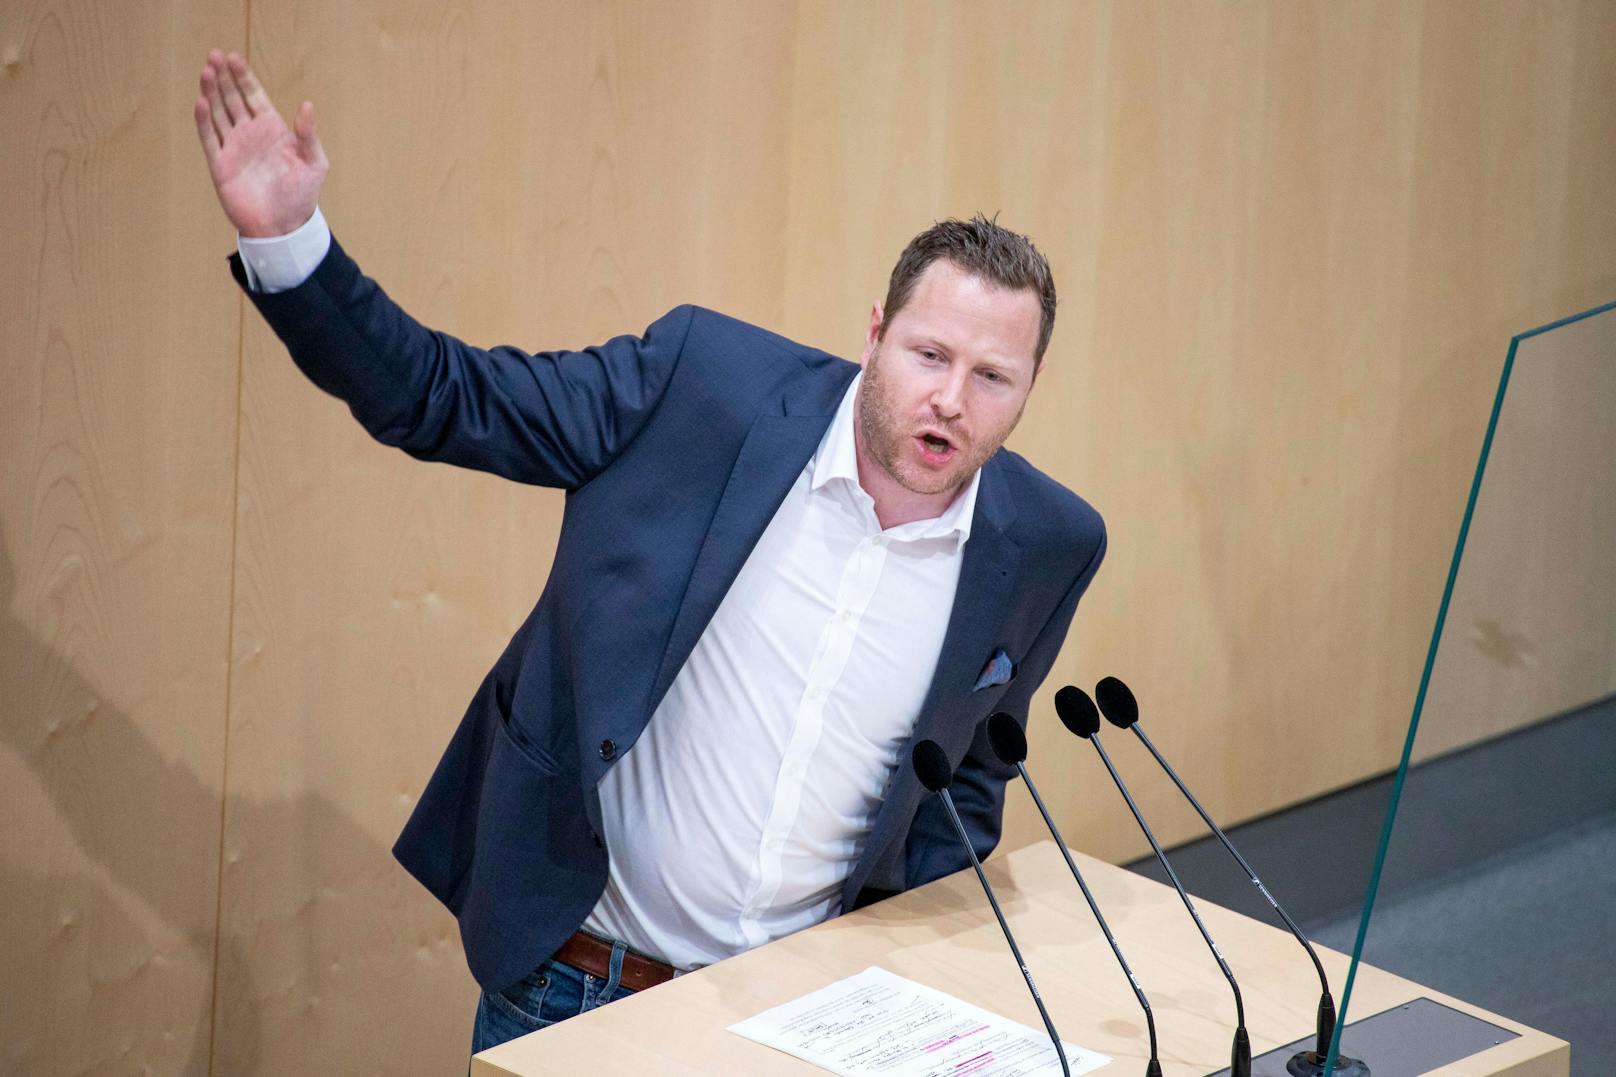 FPÖ-Generalsekretär Michael Schnedlitz bewertet die Rede von Van der Bellen am Montag äußerst negativ.